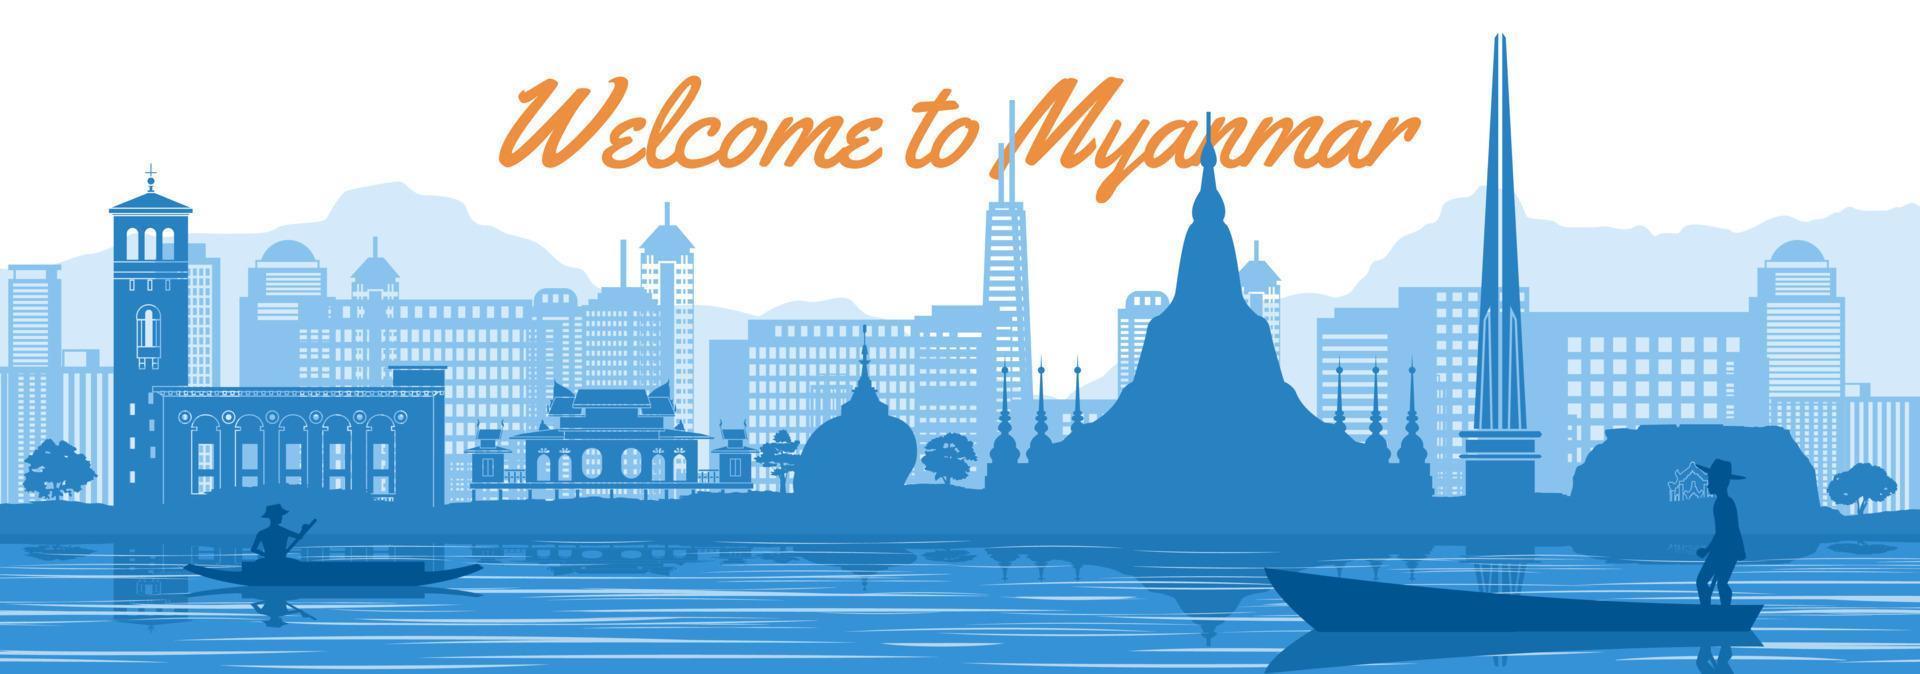 estilo de silueta de hito famoso de myanmar detrás del río y el barco y frente a las torres vector